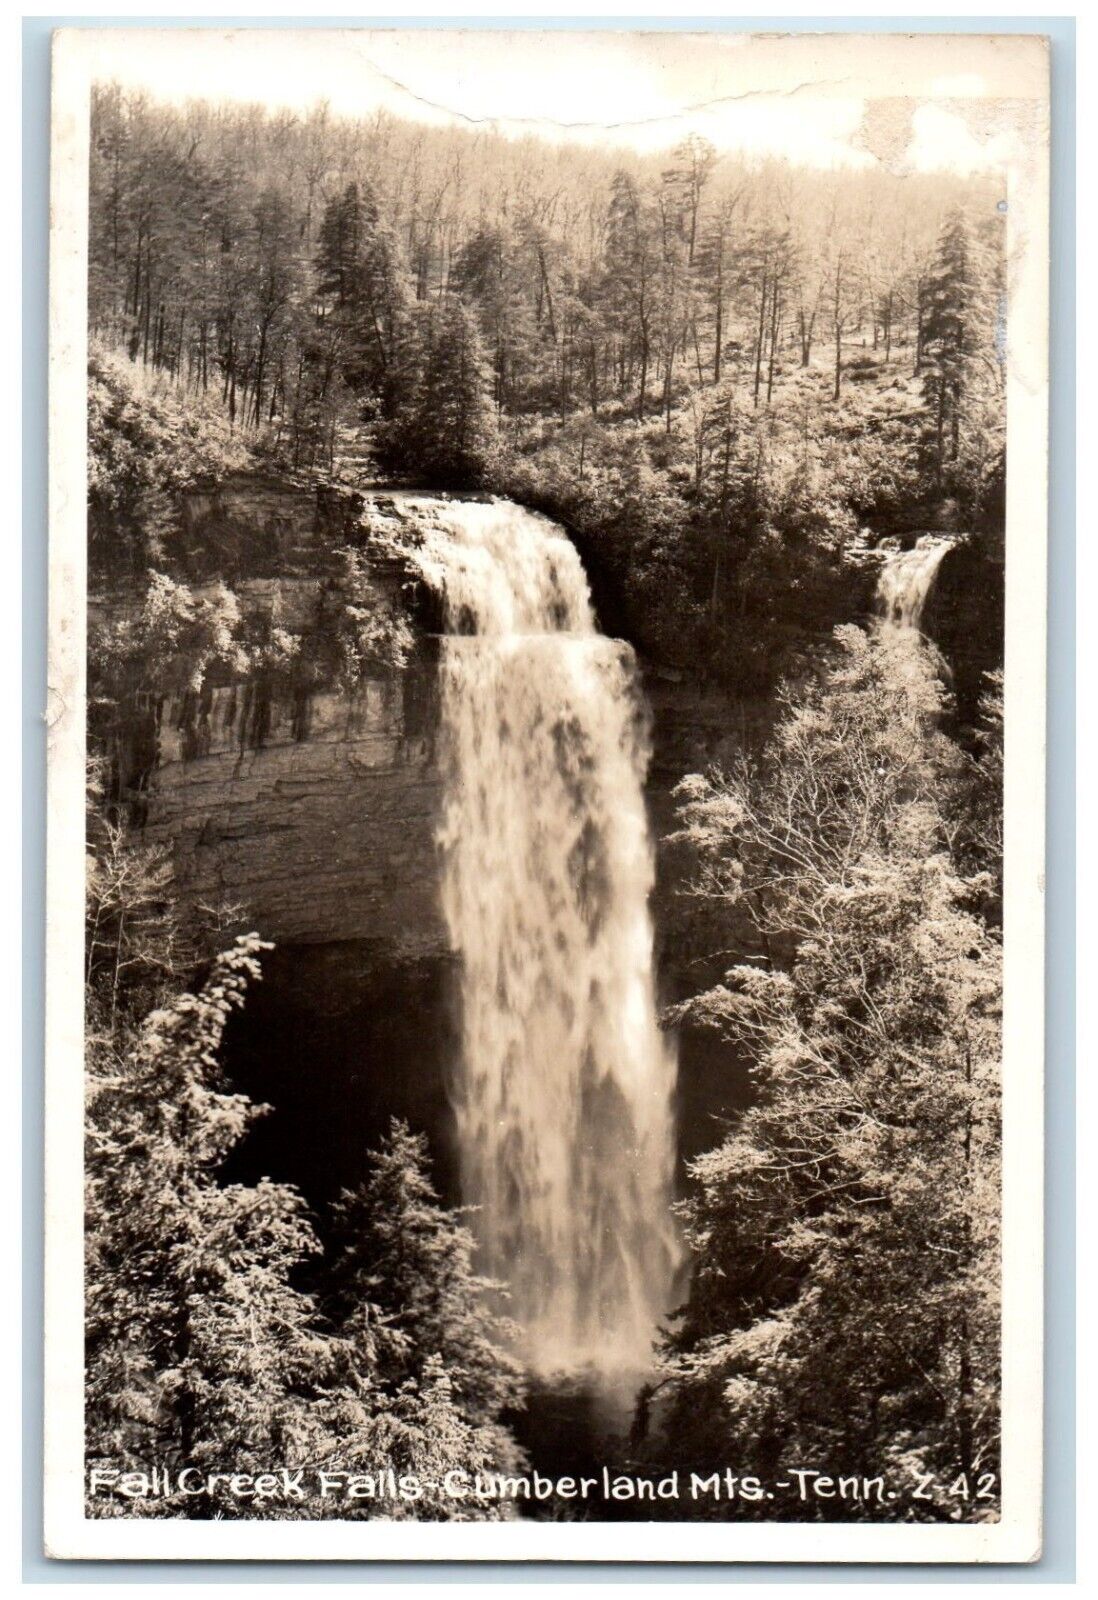 1954 Fall Creek Falls Cumberland Mts. Tennessee TN Waterfall RPPC Photo Postcard